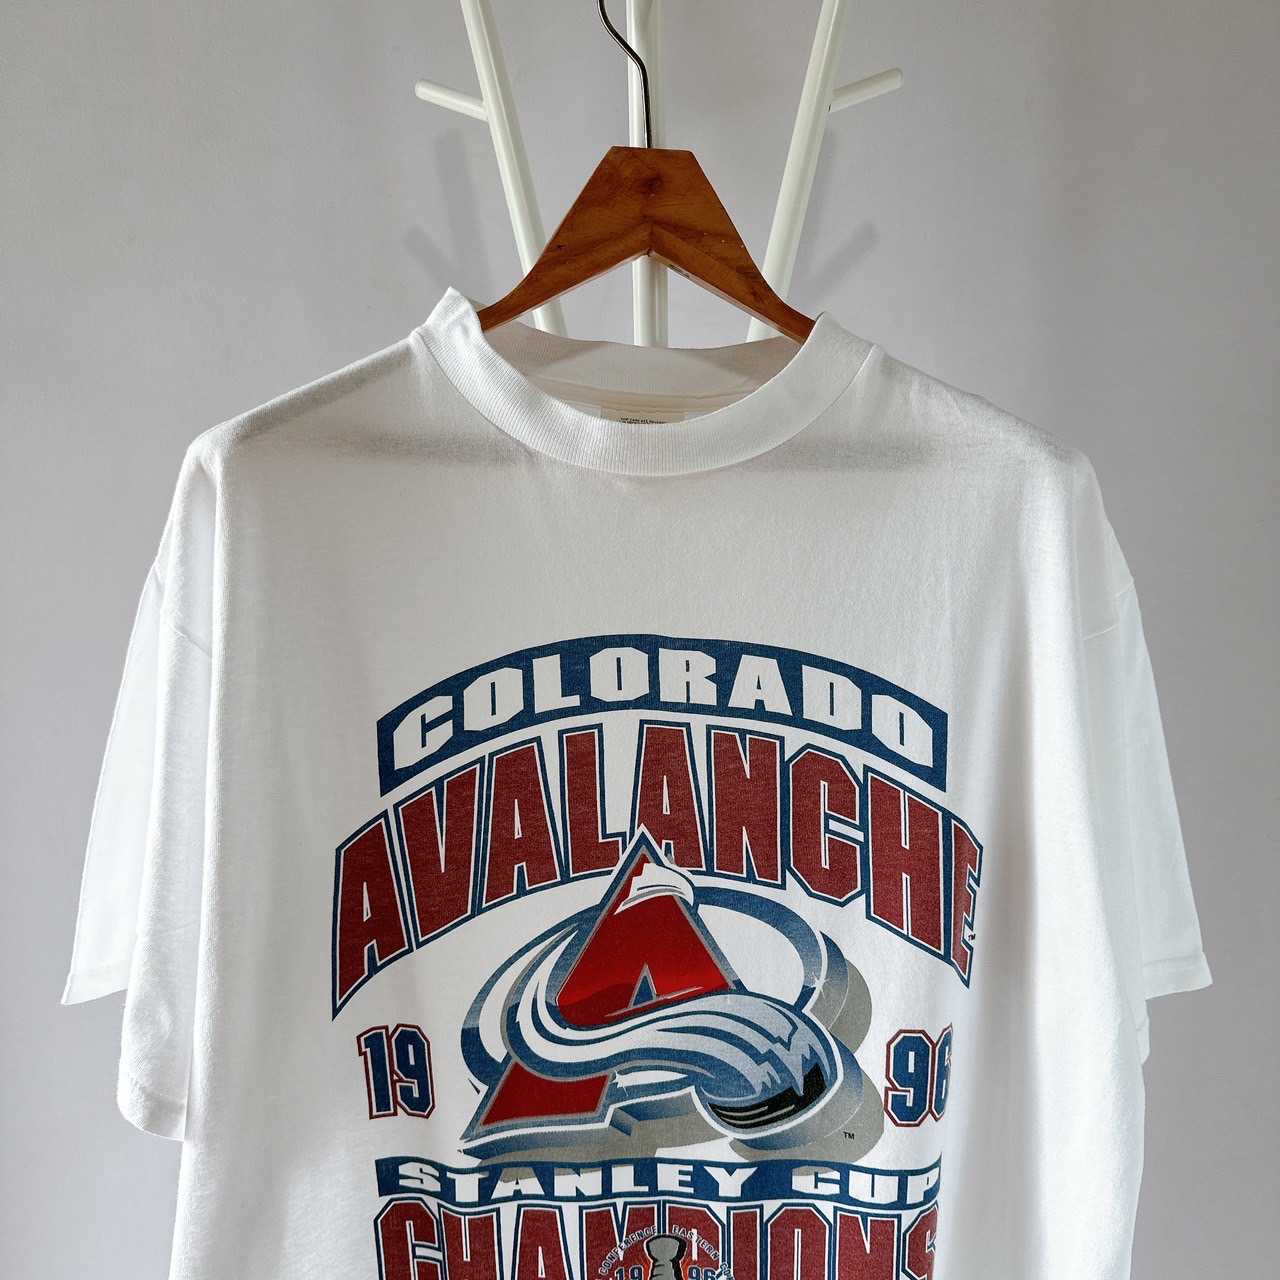 Colorado Avalanche T-Shirts in Colorado Avalanche Team Shop